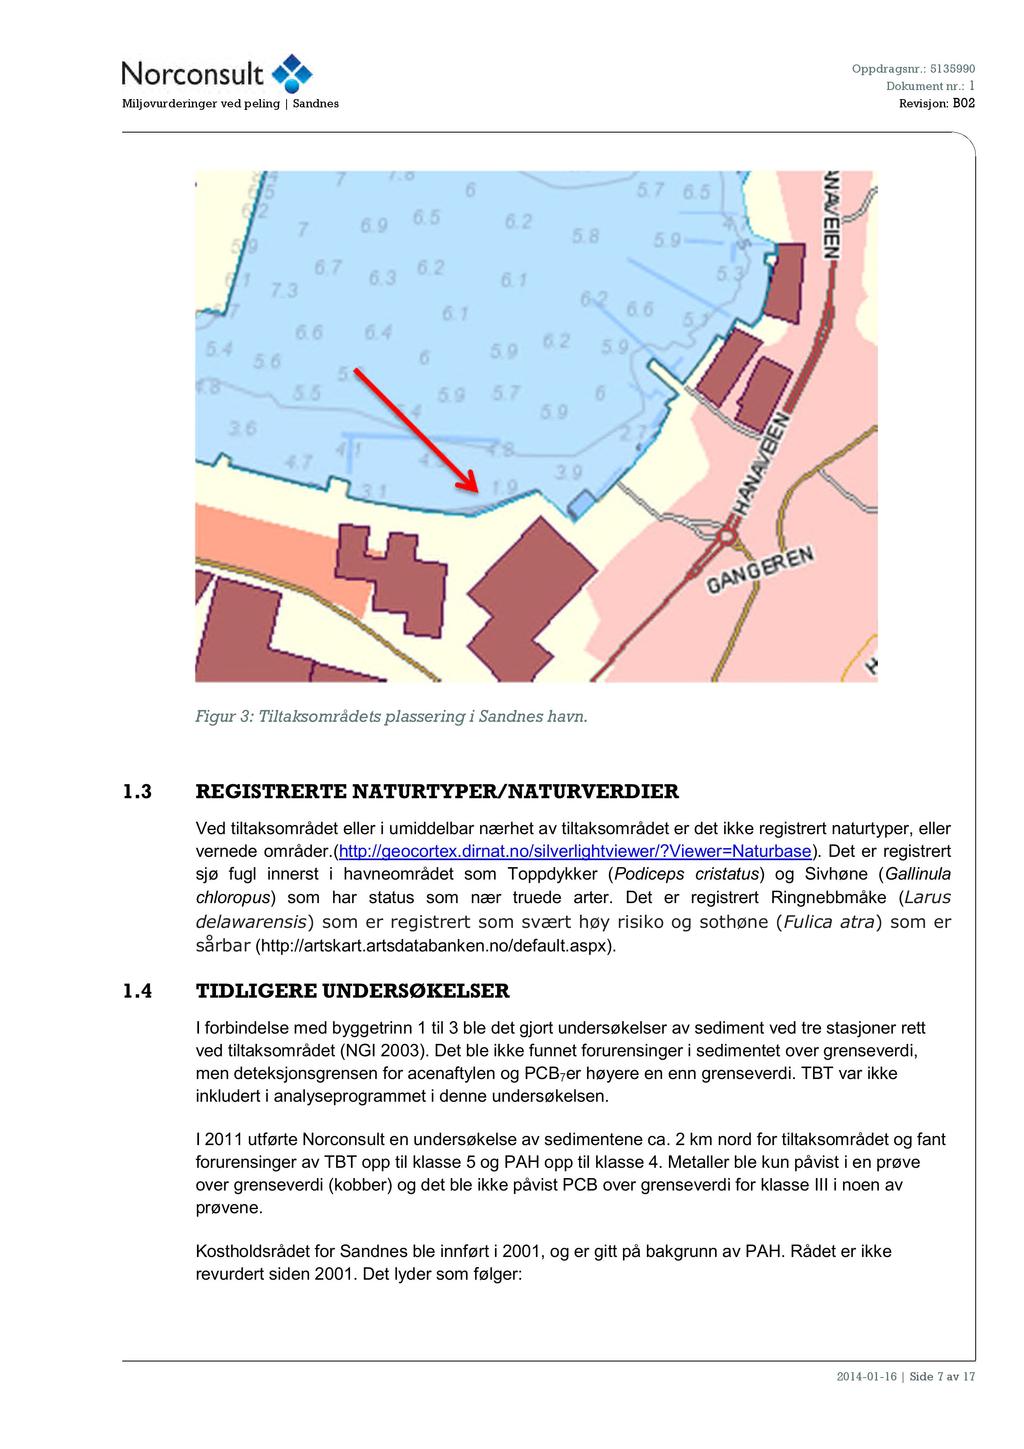 Oppdragsnr.: 5135990 Miljøvurderinger vedpeling Sandnes Revisjon: B02 Figur3: Tiltaksområdetsplassering i Sandneshavn. 1.